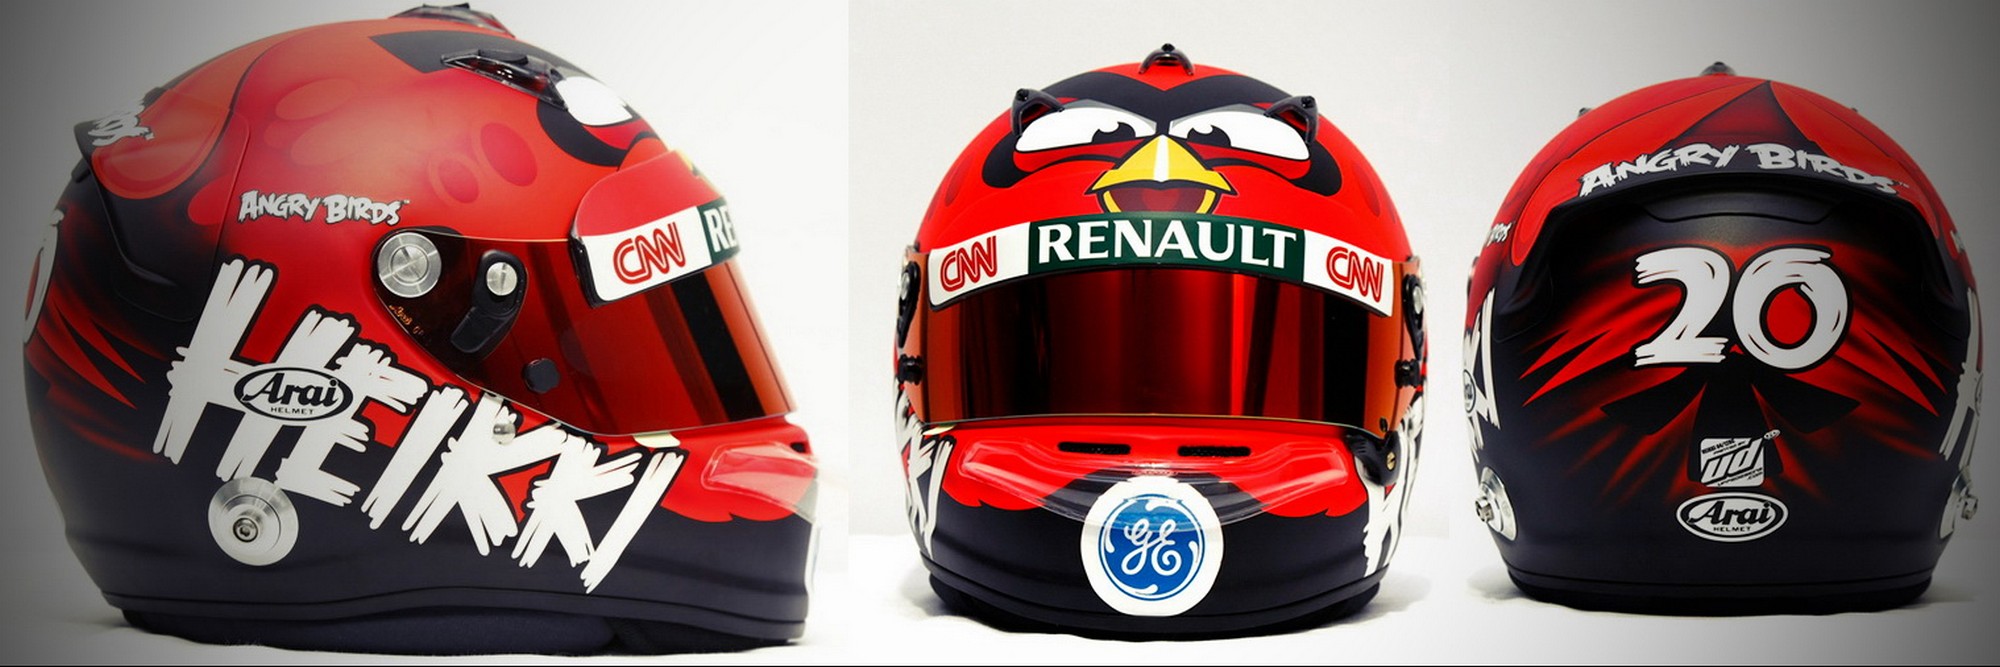 Шлем Хейкки Ковалайнена на сезон 2012 года | 2012 helmet of Heikki Kovalainen